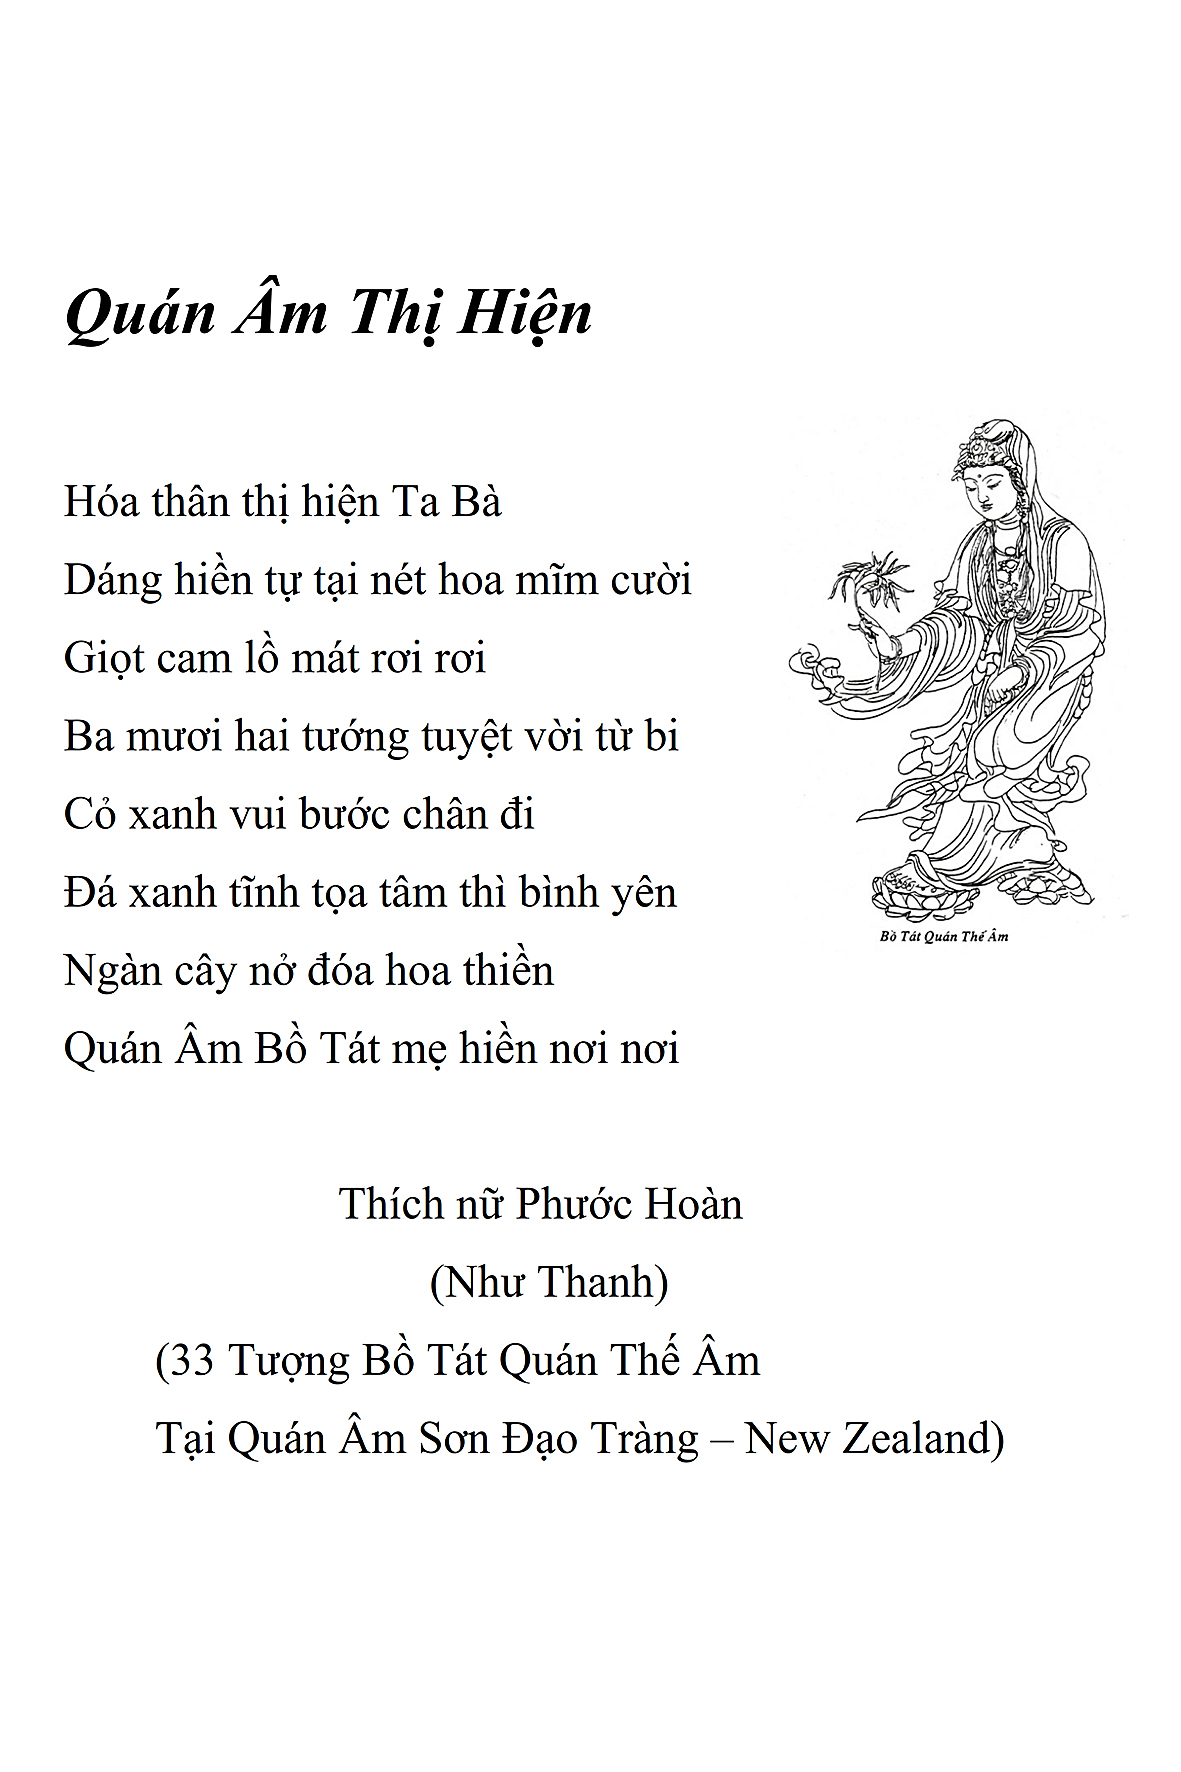 Qua Nam Thi Hien